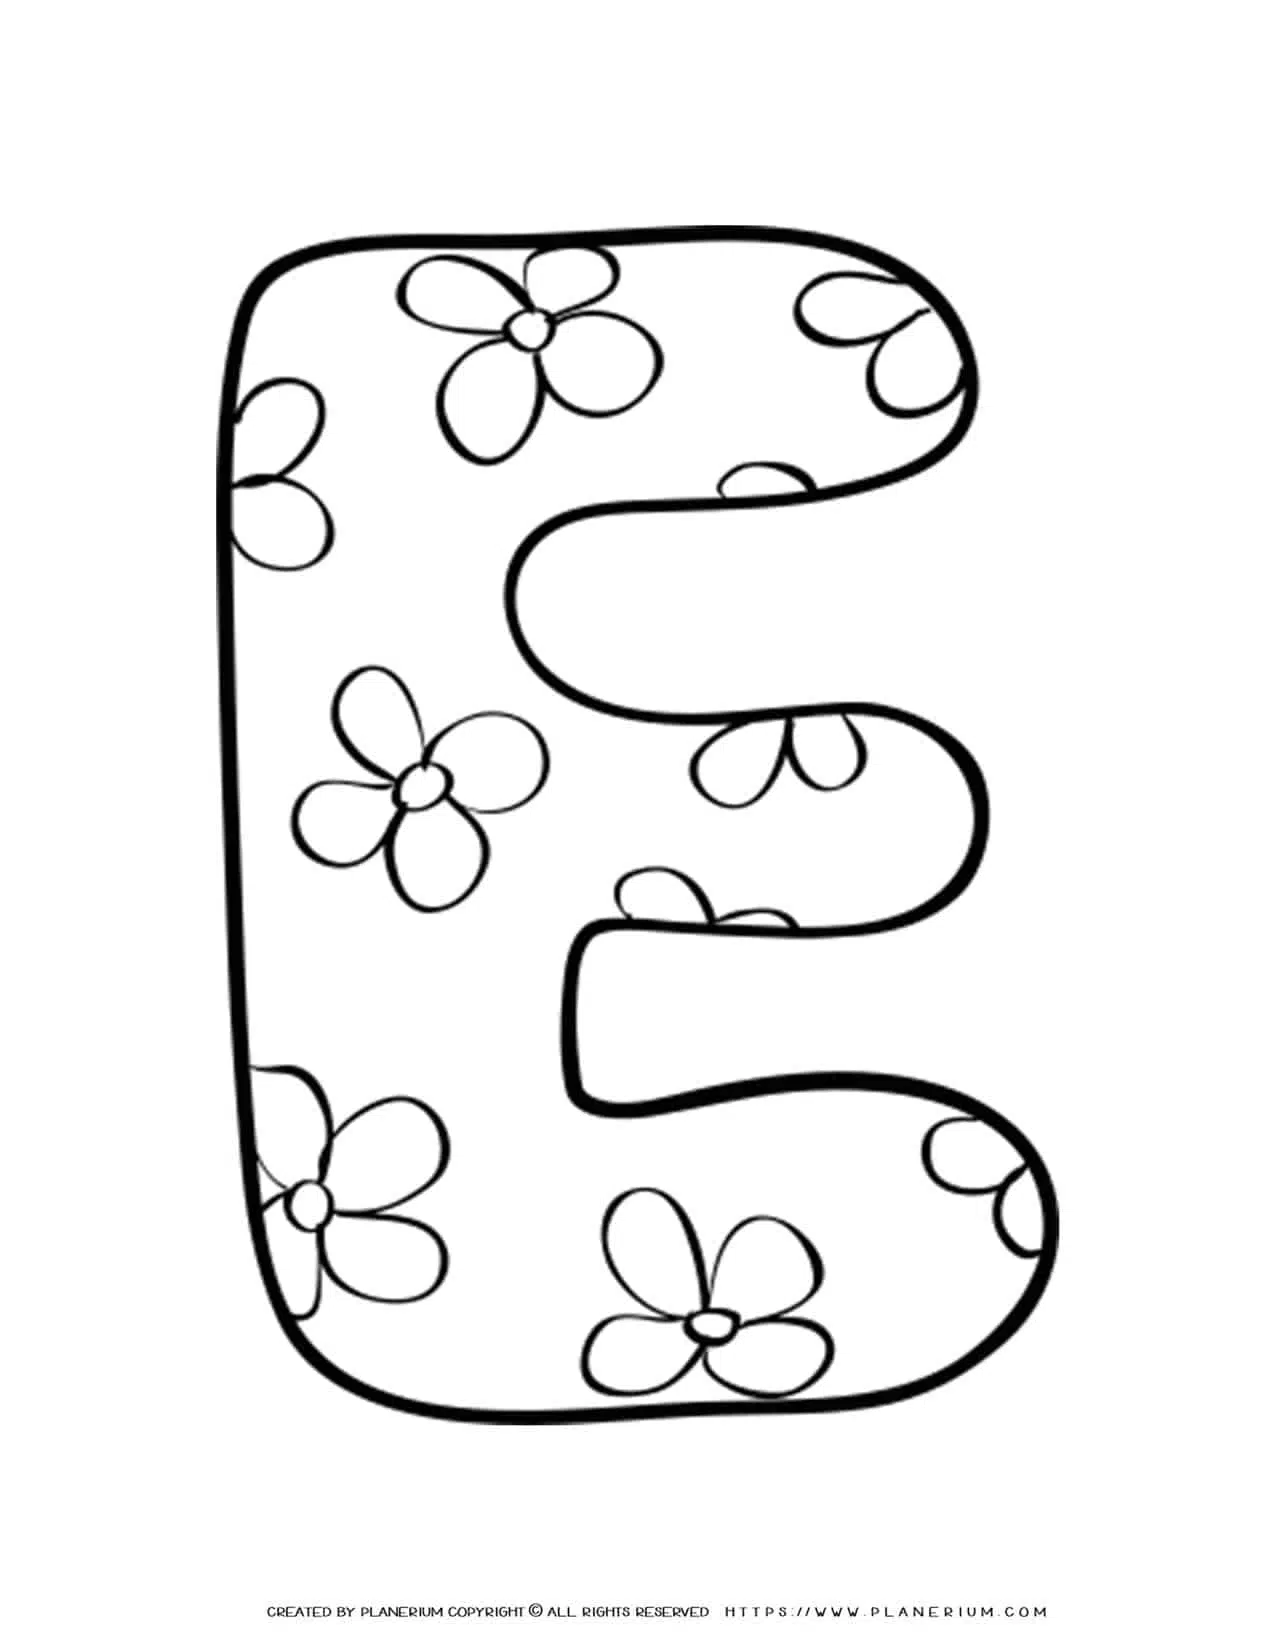 Раскраска английского алфавита для детей